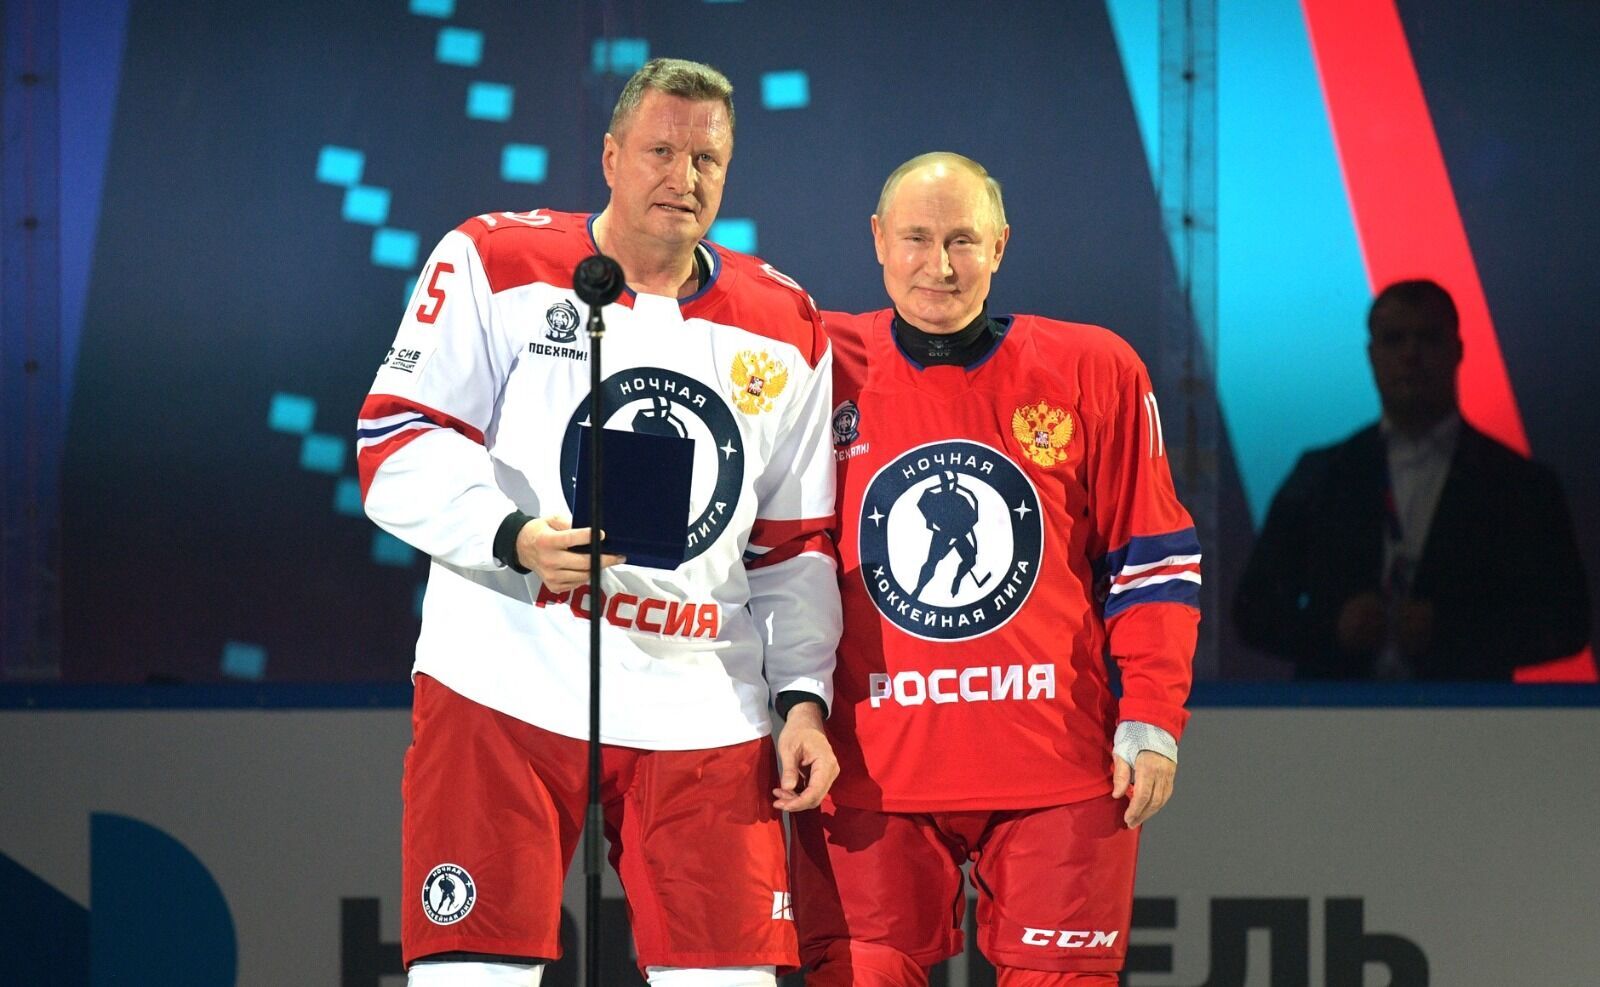 Российский функционер рассказал, как Путину поддаются на хоккее, назвав это "большой мотивацией"